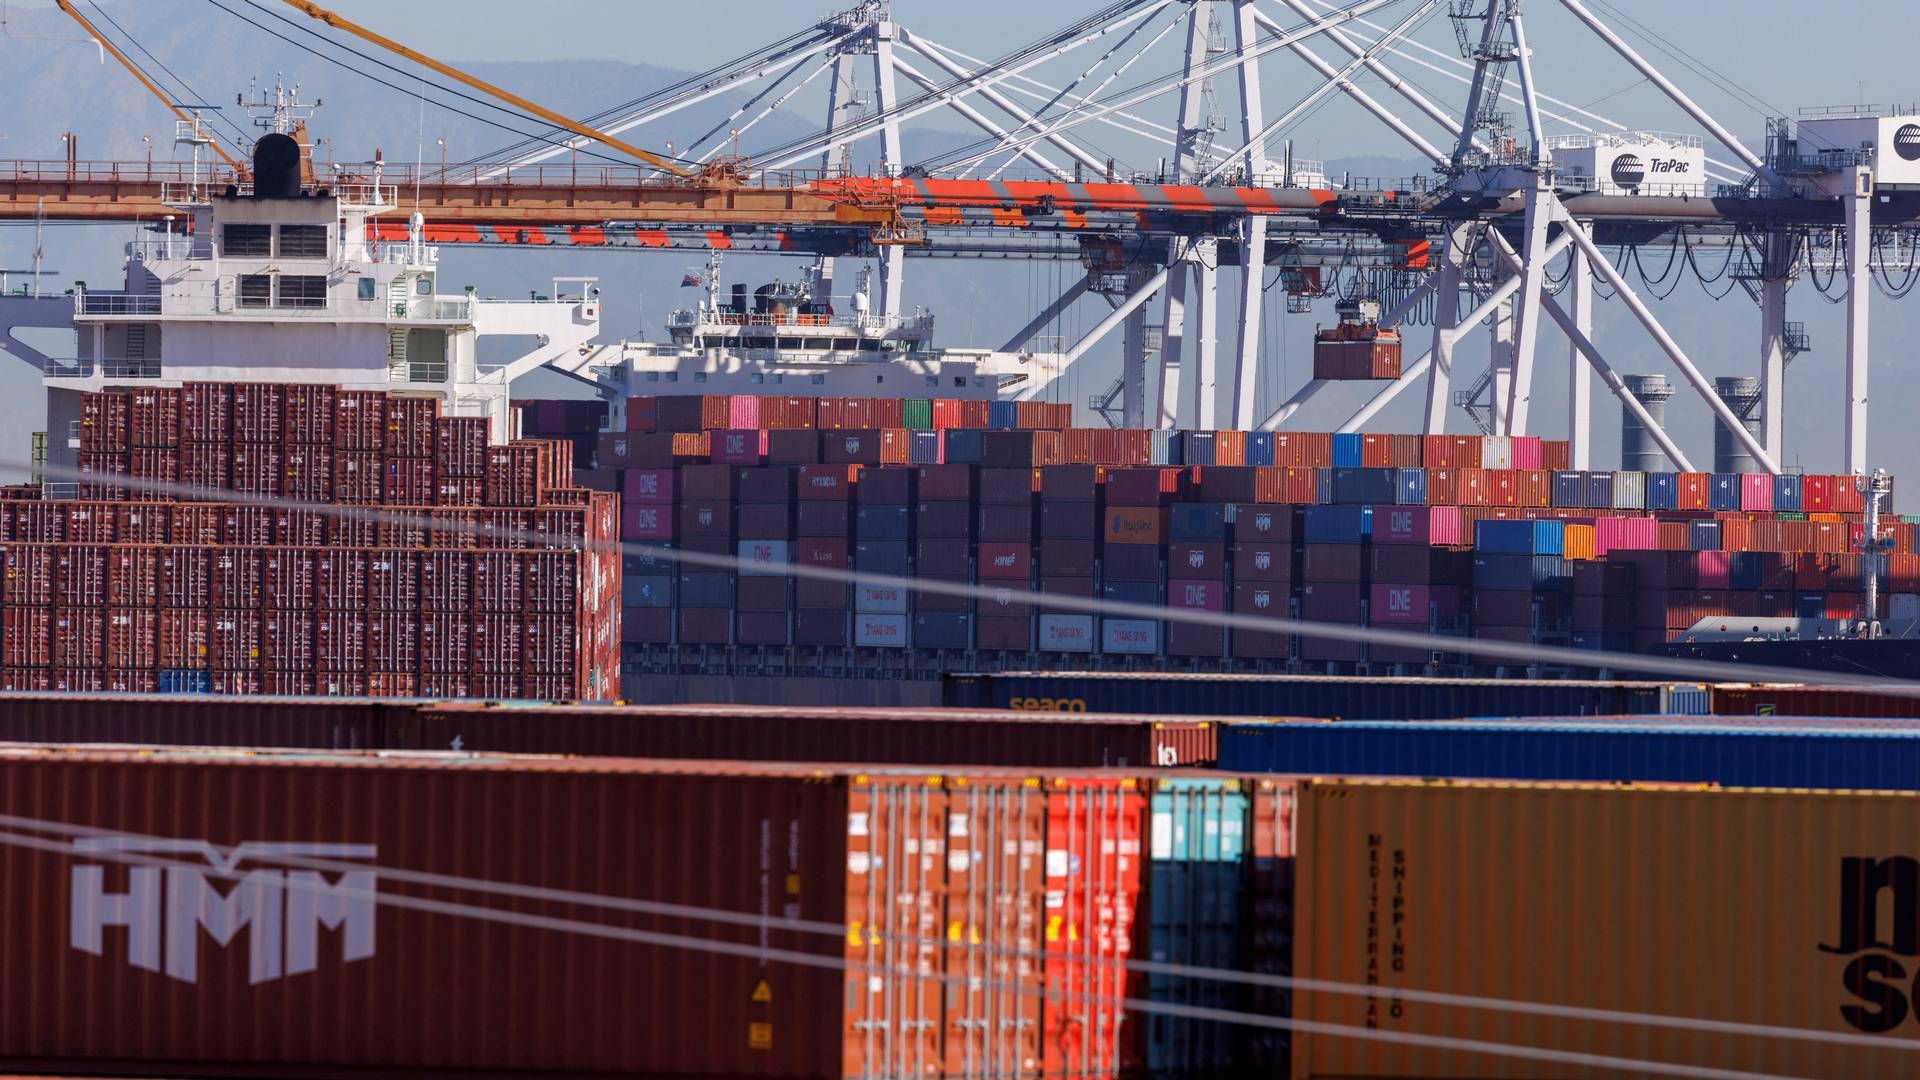 Målet med den grønne korridor er at sikre, at havne, skibsejere, energiproducenter og regulatorer bidrager til at dekarbonisere handlen på den centrale shippingrute. | Foto: Mike Blake